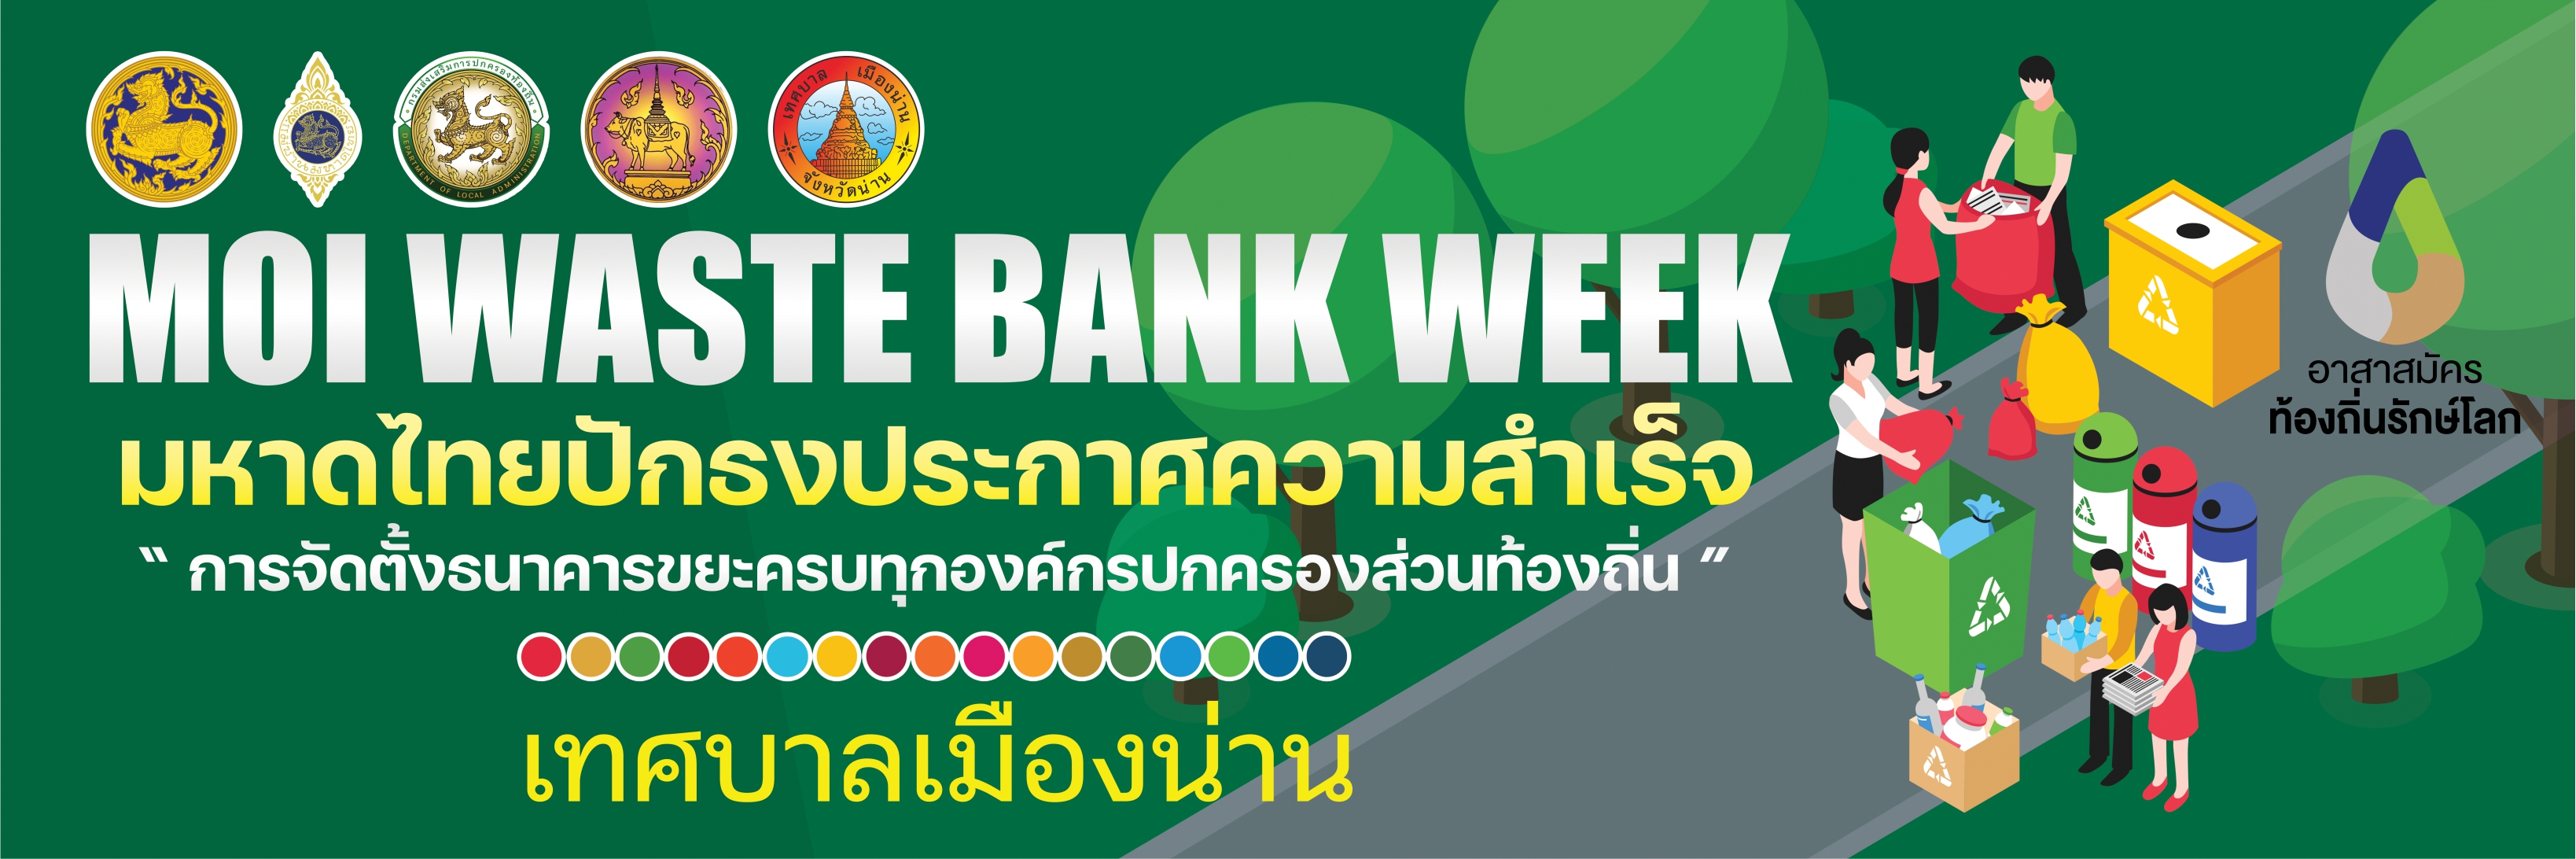 เทศบาลเมืองน่าน ขอเชิญชวนประชาชนทั่วไป อถล. และพี่น้องสื่อมวลชน  ร่วมงานนิทรรศการ  "MOI Waste Bank Week - มหาดไทยปักธงประกาศความสำเร็จ 1 องค์กรปกครองส่วนท้องถิ่น 1 ธนาคารขยะ" 